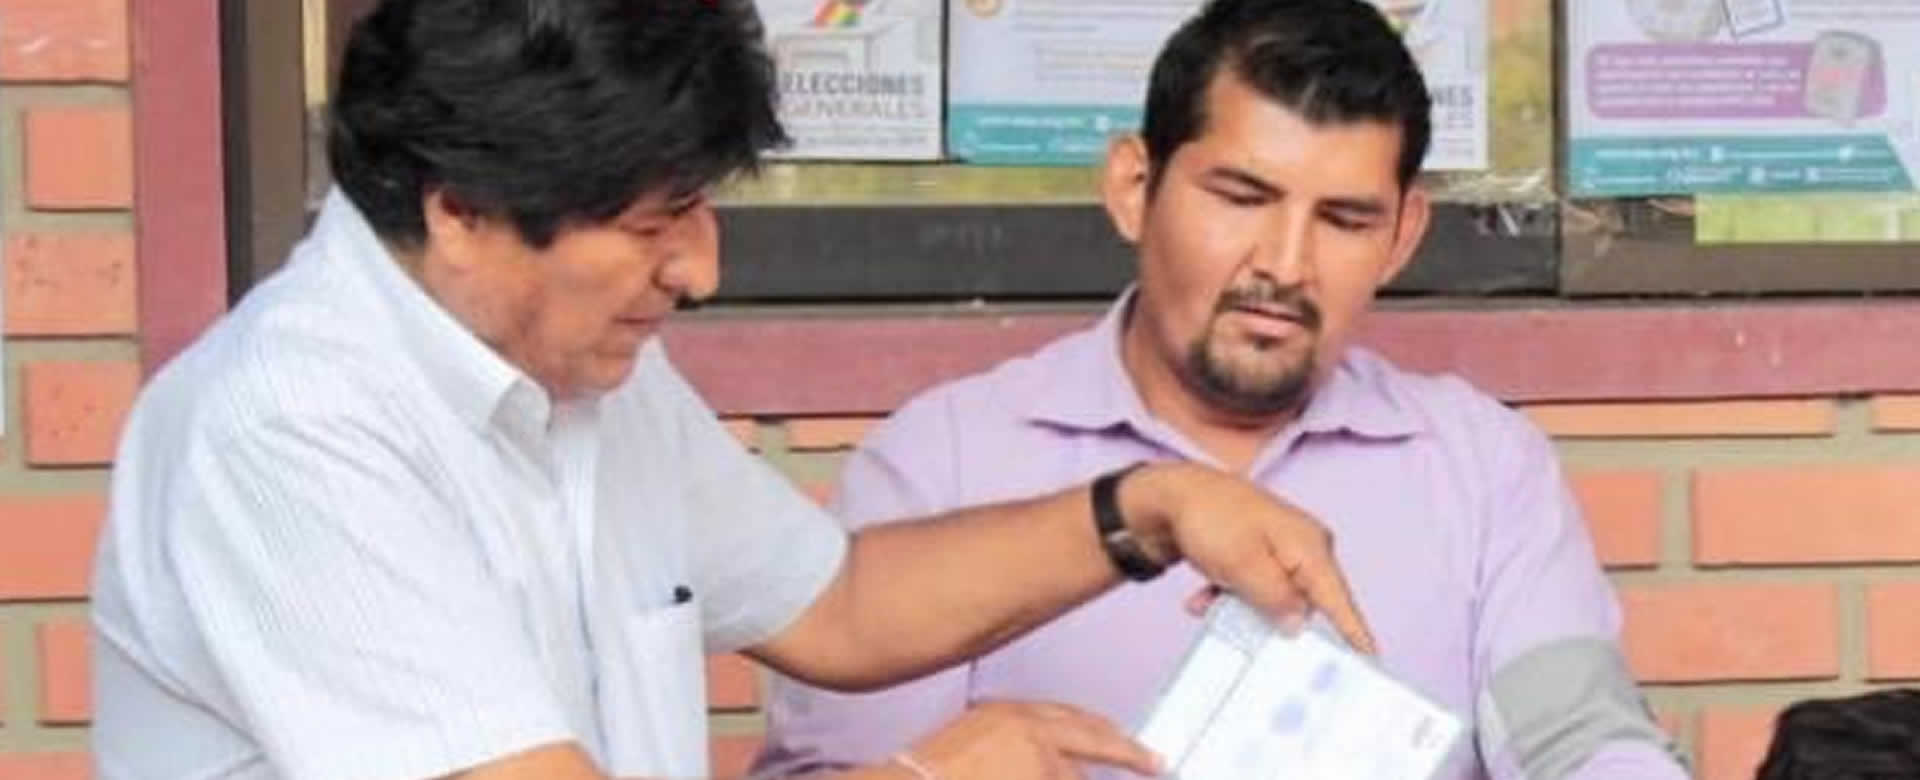 Presidente Evo Morales vota en elecciones generales de Bolivia